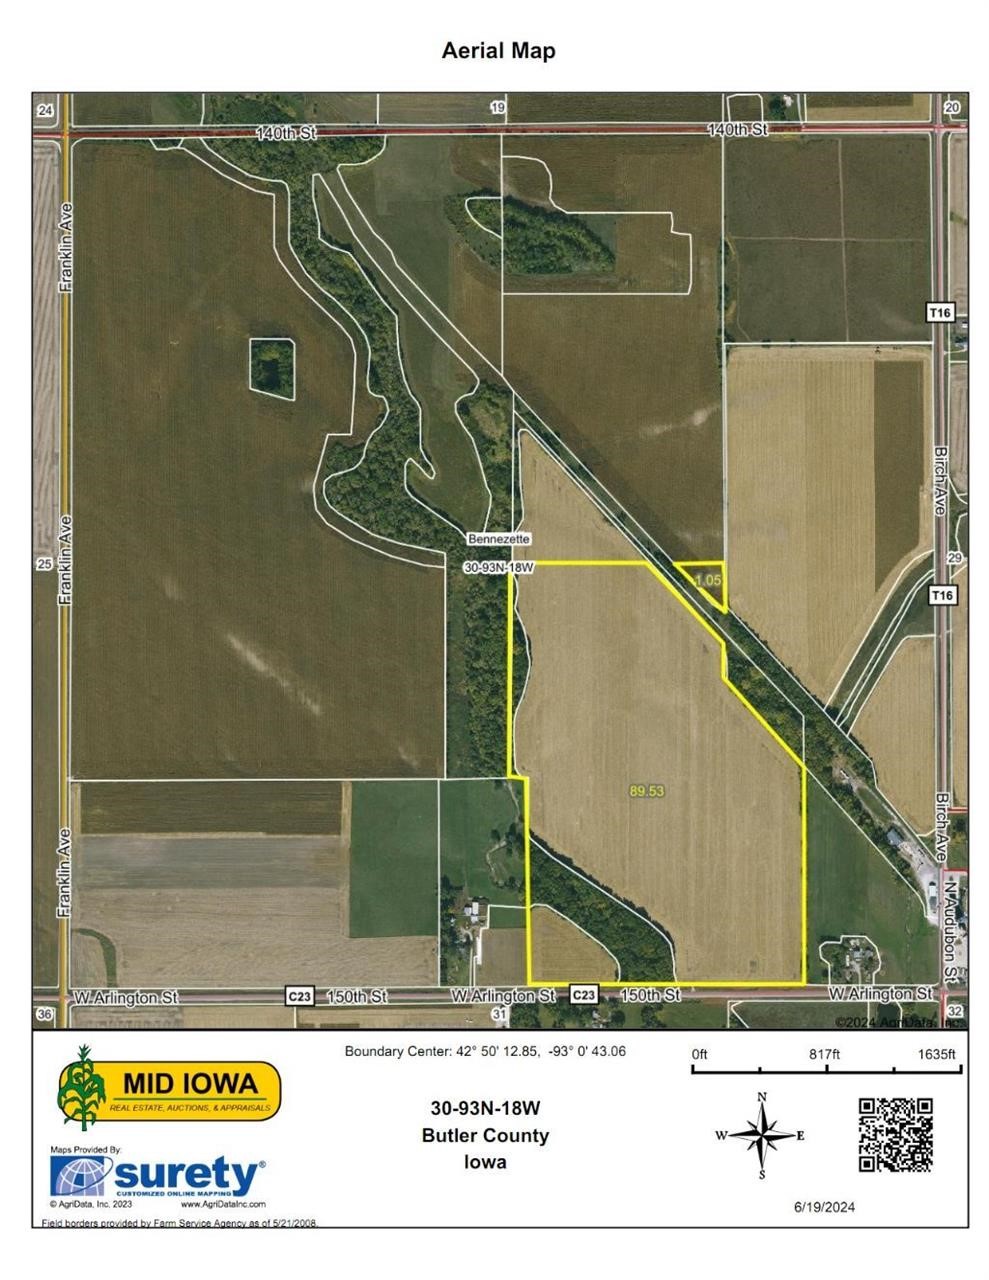 Butler County Iowa Land Auction, 91 Acres M/L